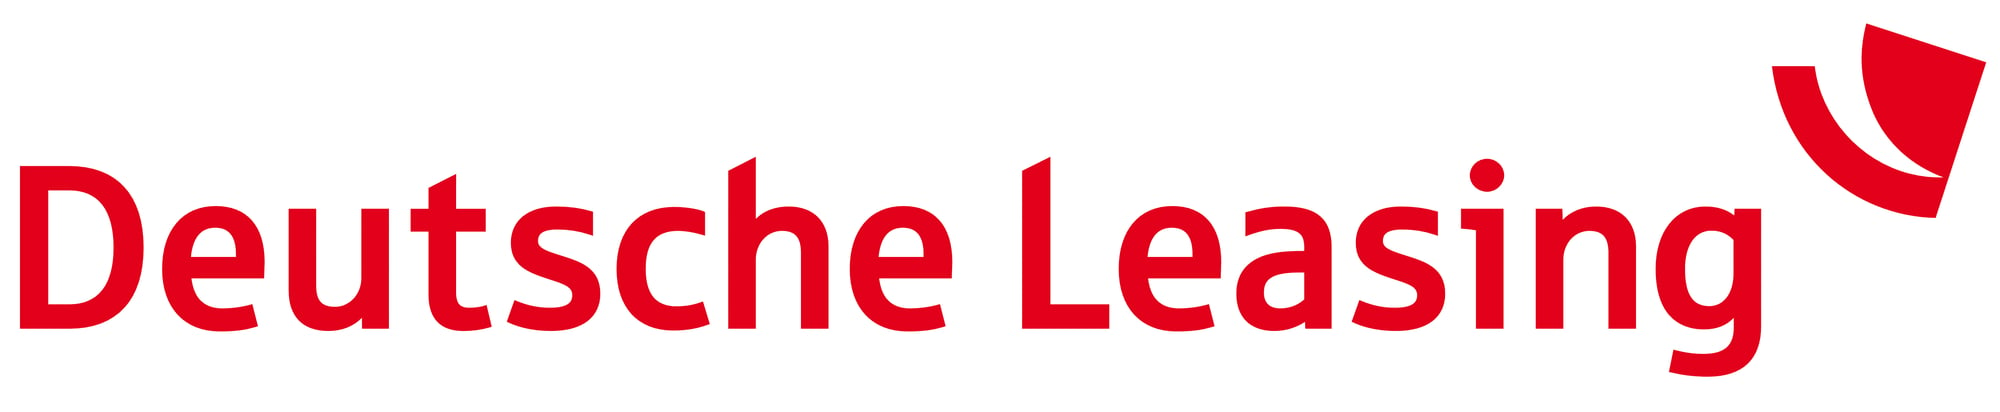 Deutsche Leasing neues Logo